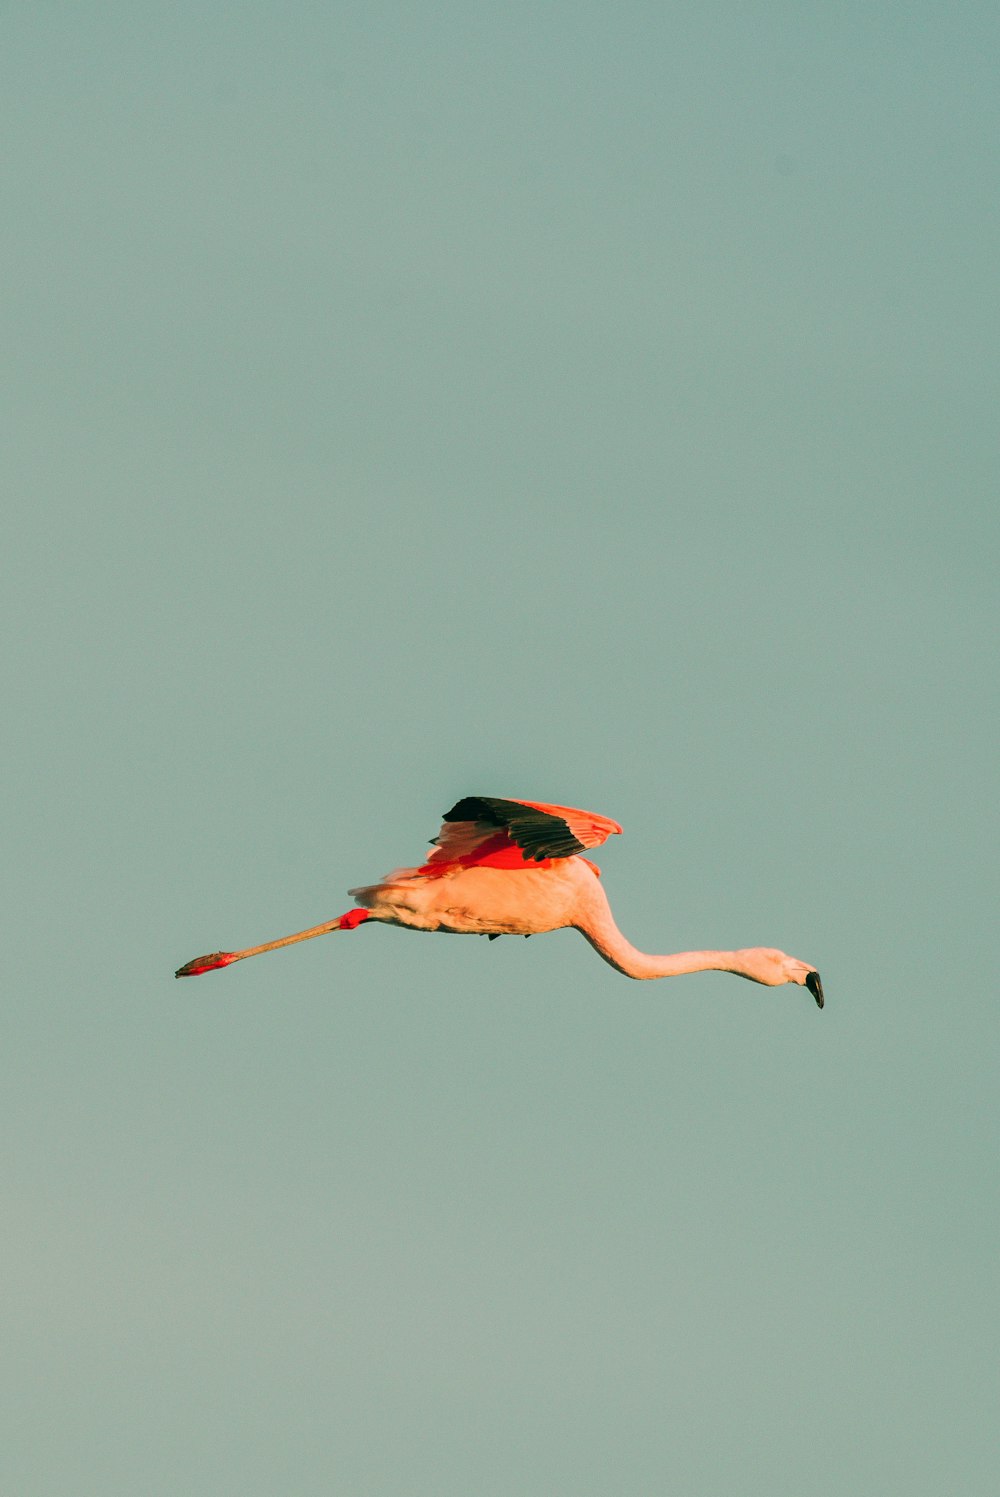 um flamingo voando através de um céu azul